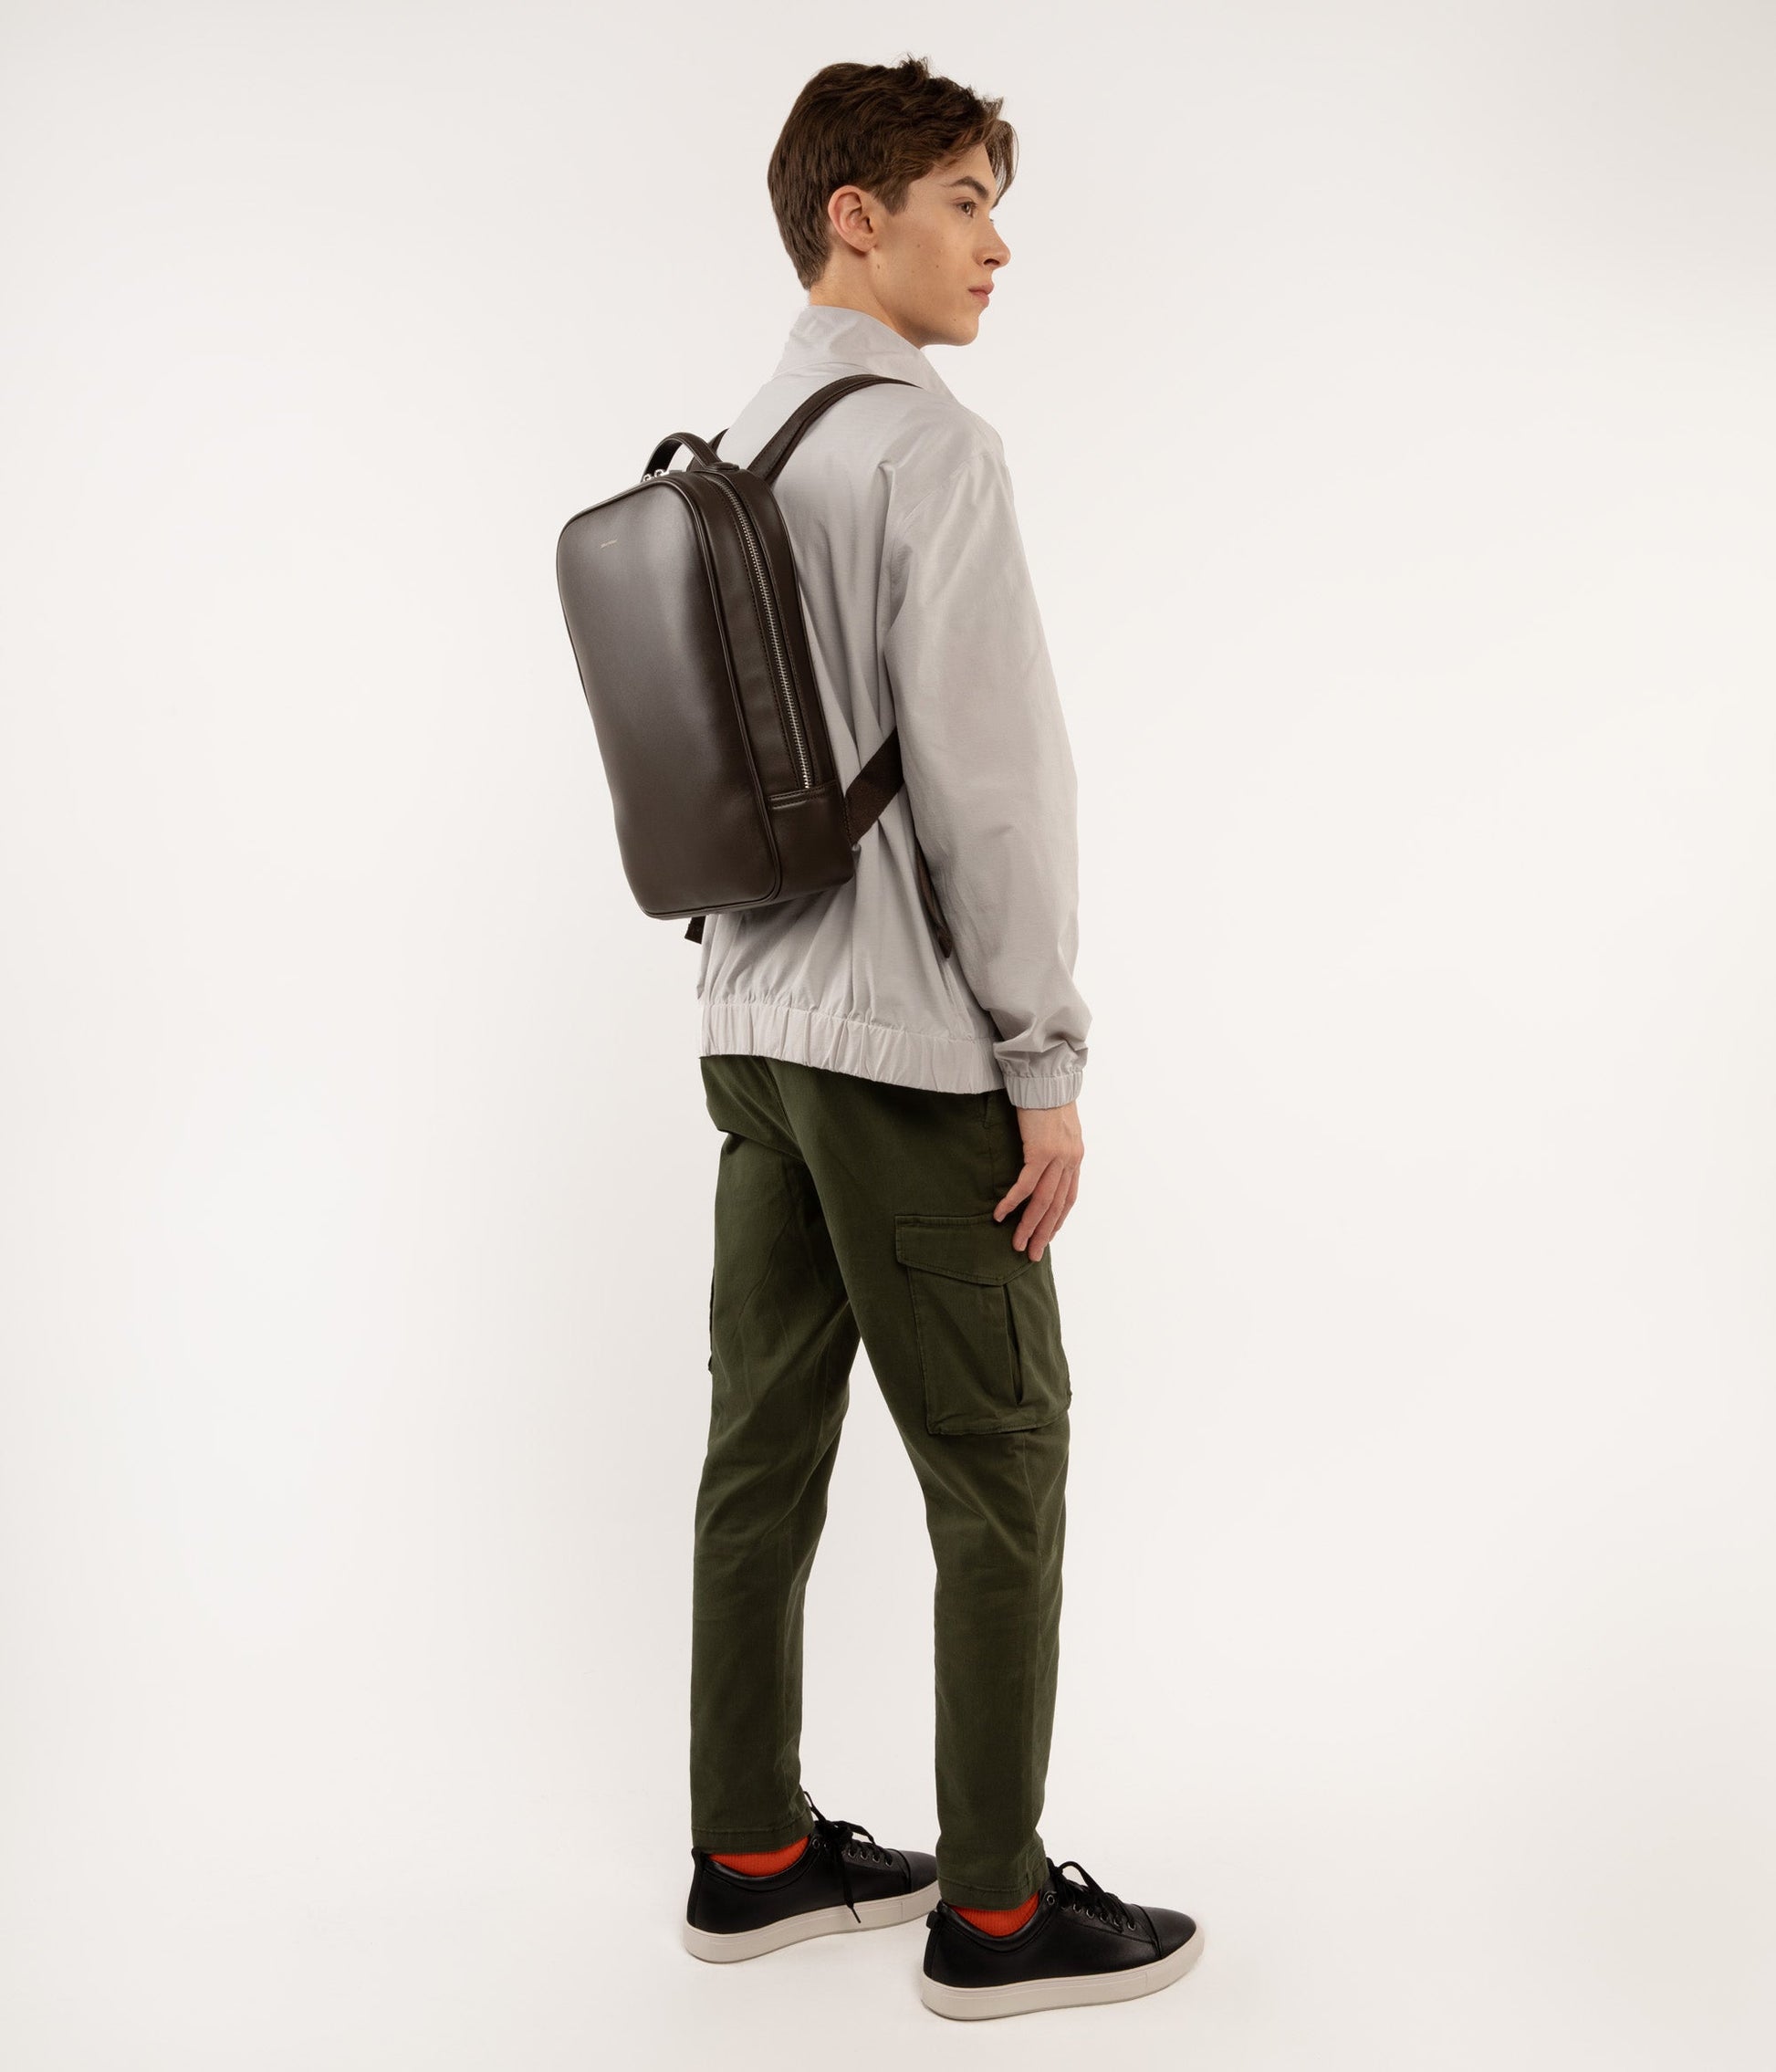 ALEX Vegan Backpack - Loom | Color: Pink - variant::fondant